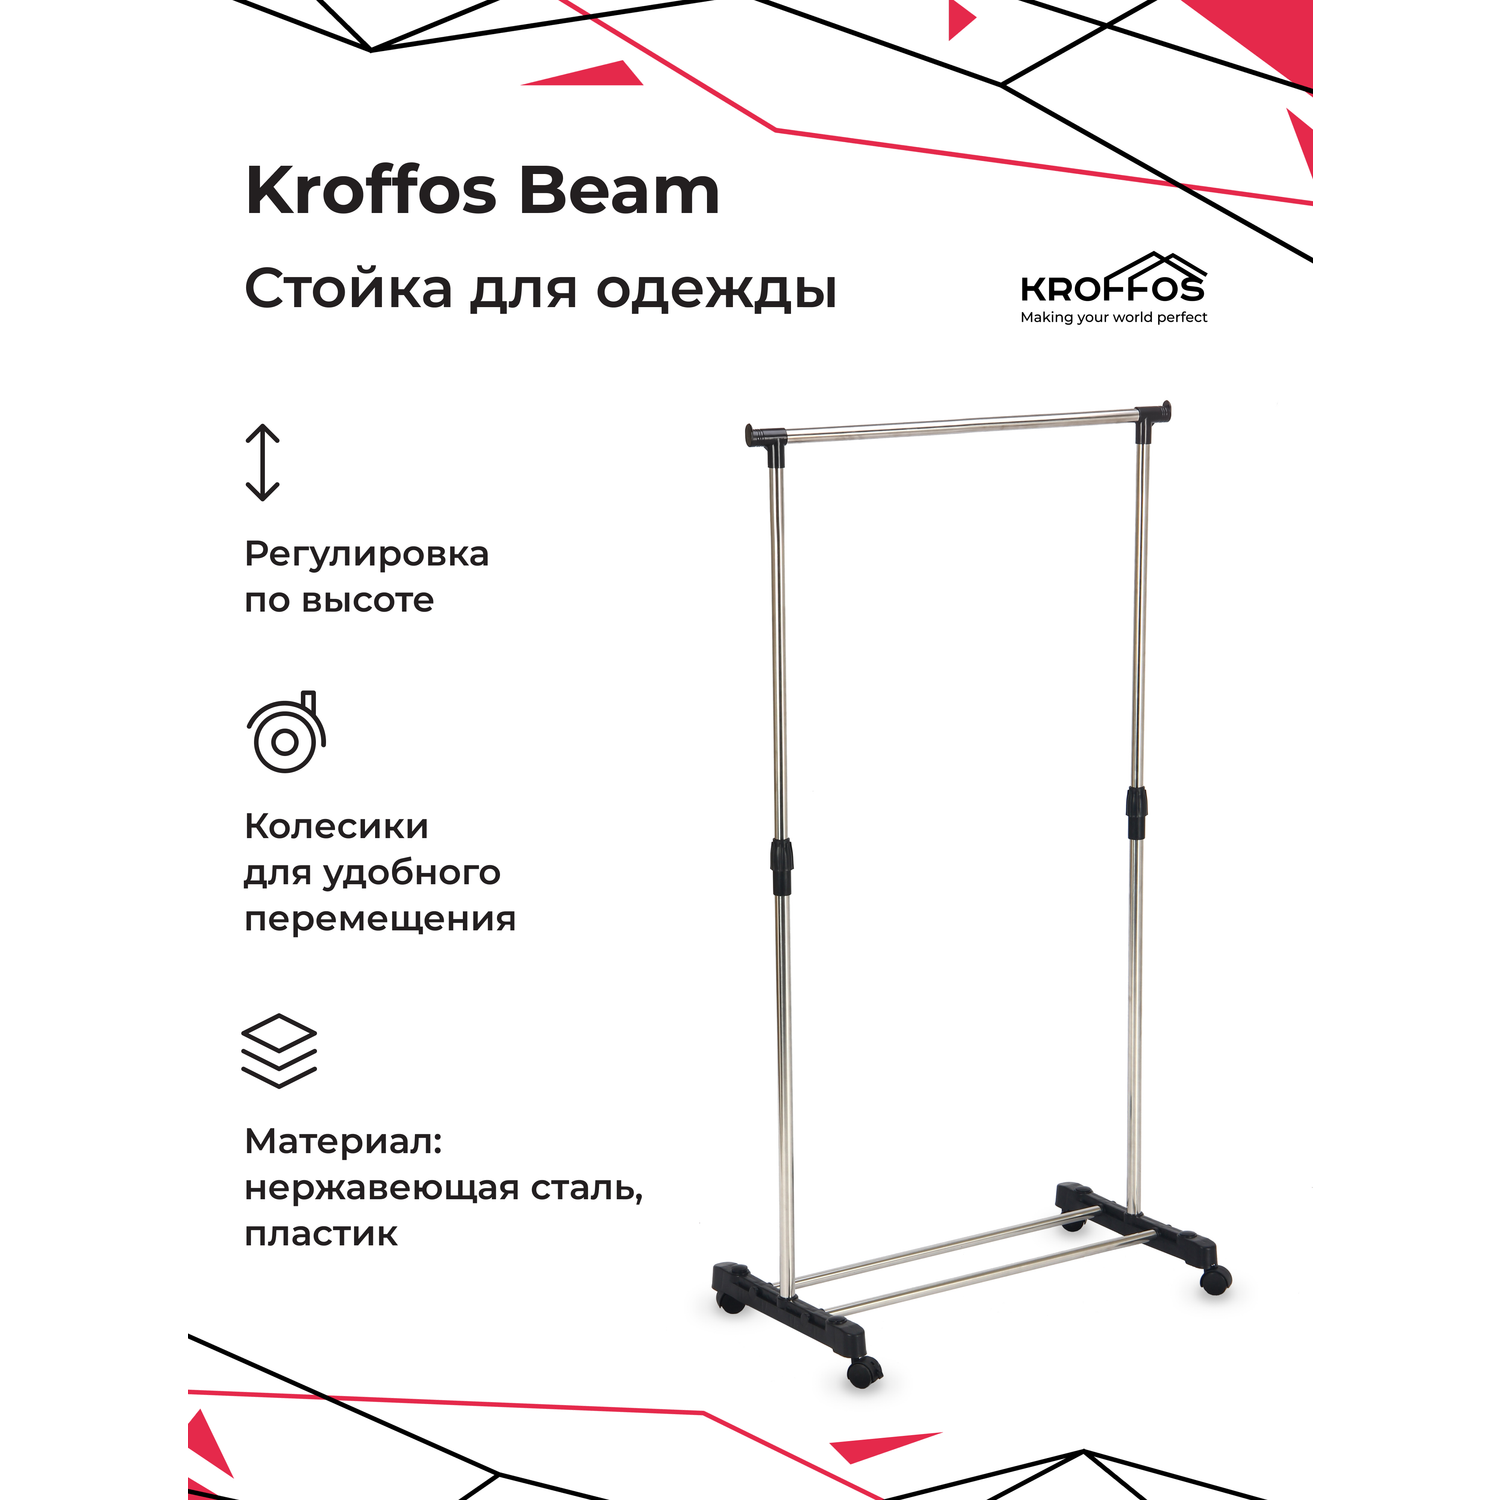 Вешалка для одежды KROFFOS Beam передвижная одиночная - фото 1